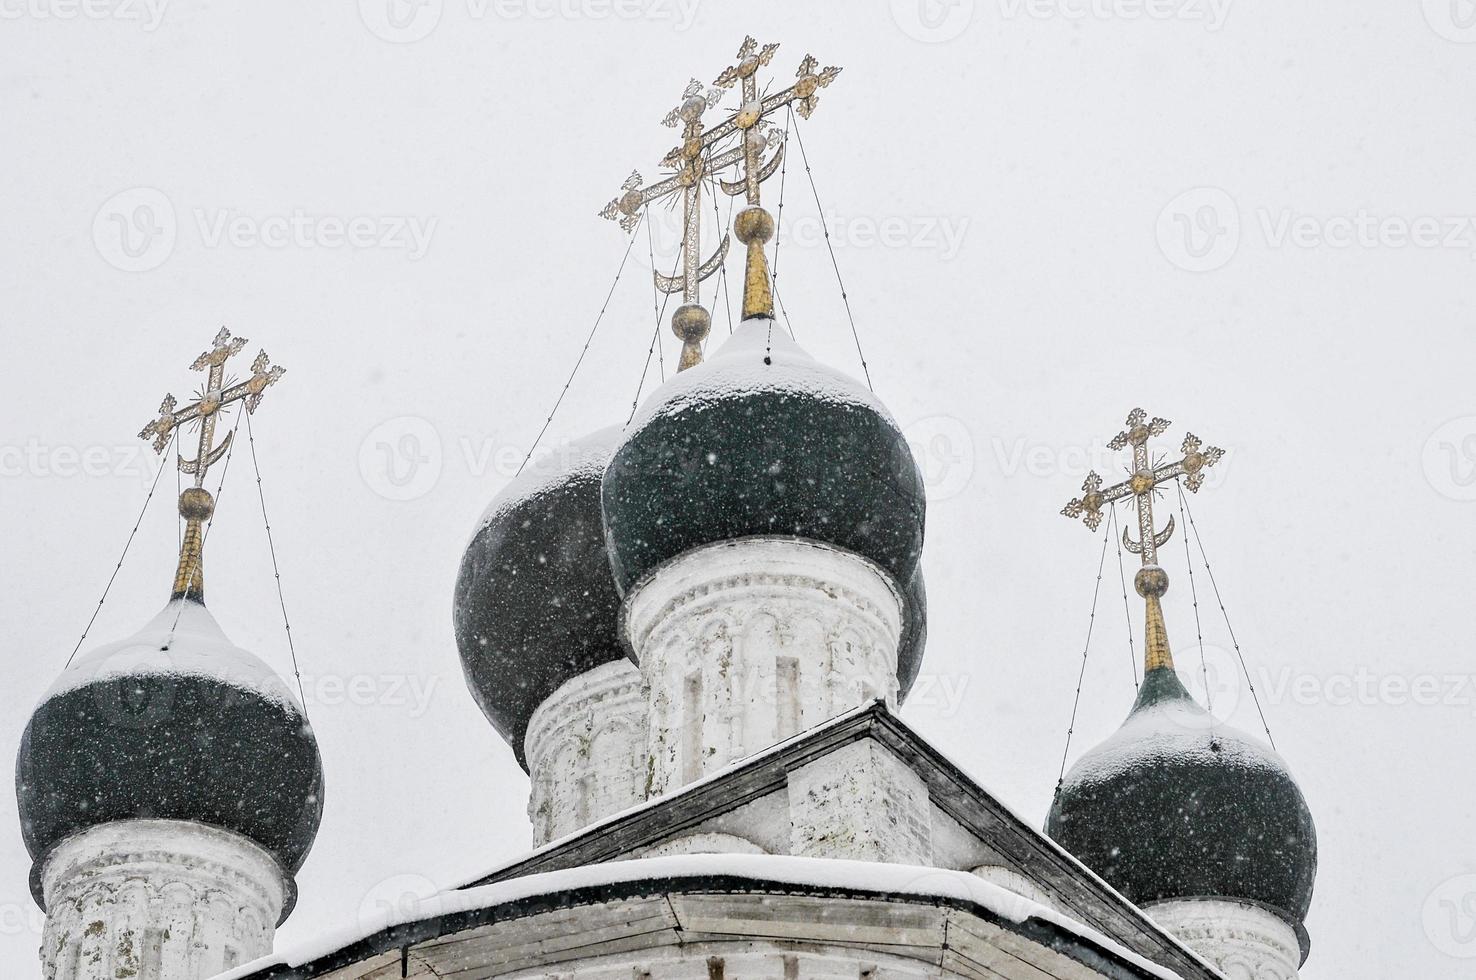 Nikitsky Monastery in Pereslavl-Zalesskiy, Yaroslavl region, Russia photo